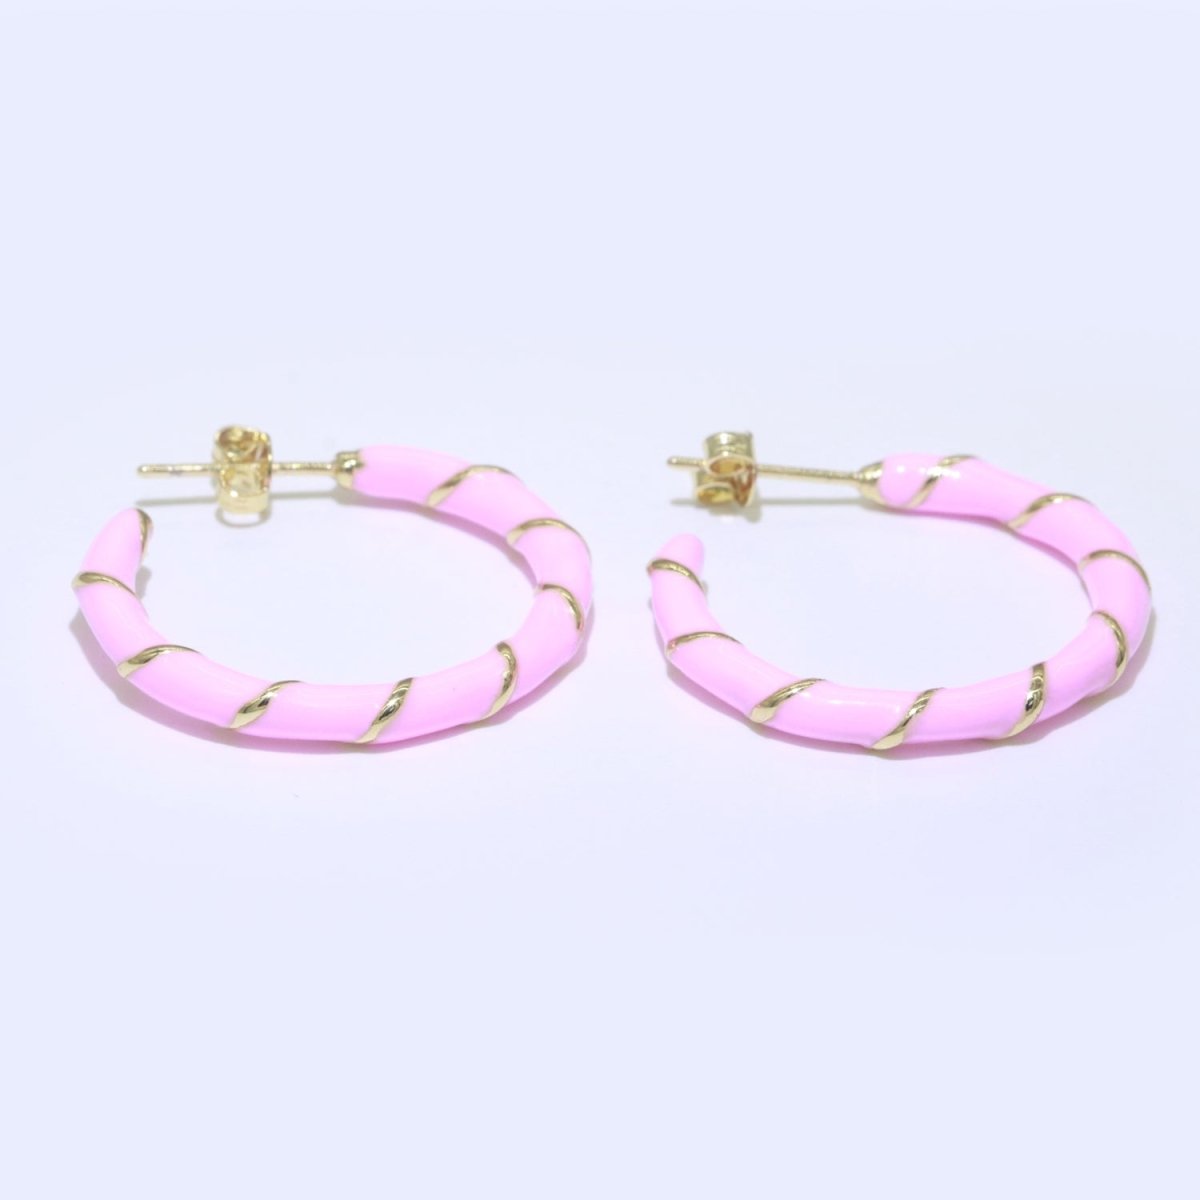 Baby Pink Enamel Hoop Earring with Gold Swirl 26mm Hoop earring Jewelry Gift T-006 - DLUXCA